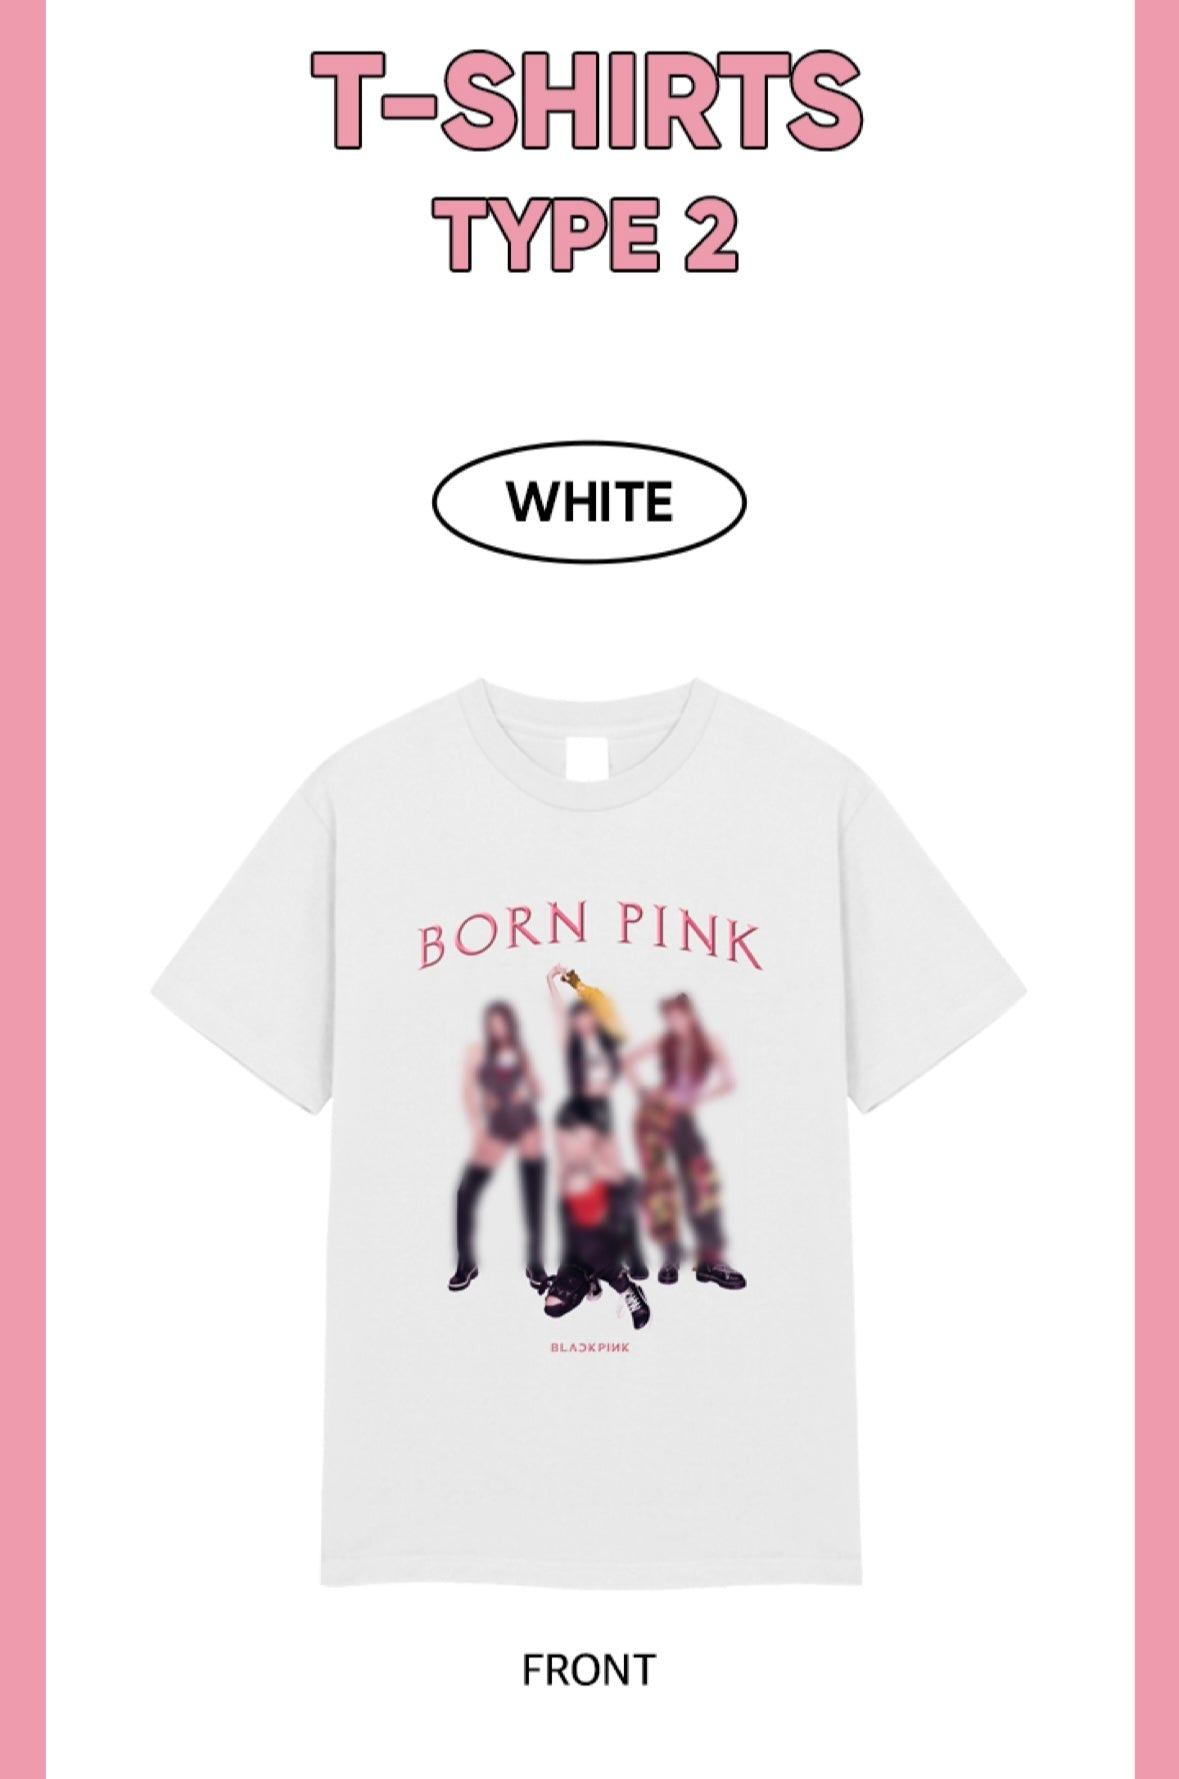 Customize Blackpink Born Pink Shirt Unisex T-Shirt - AnniversaryTrending